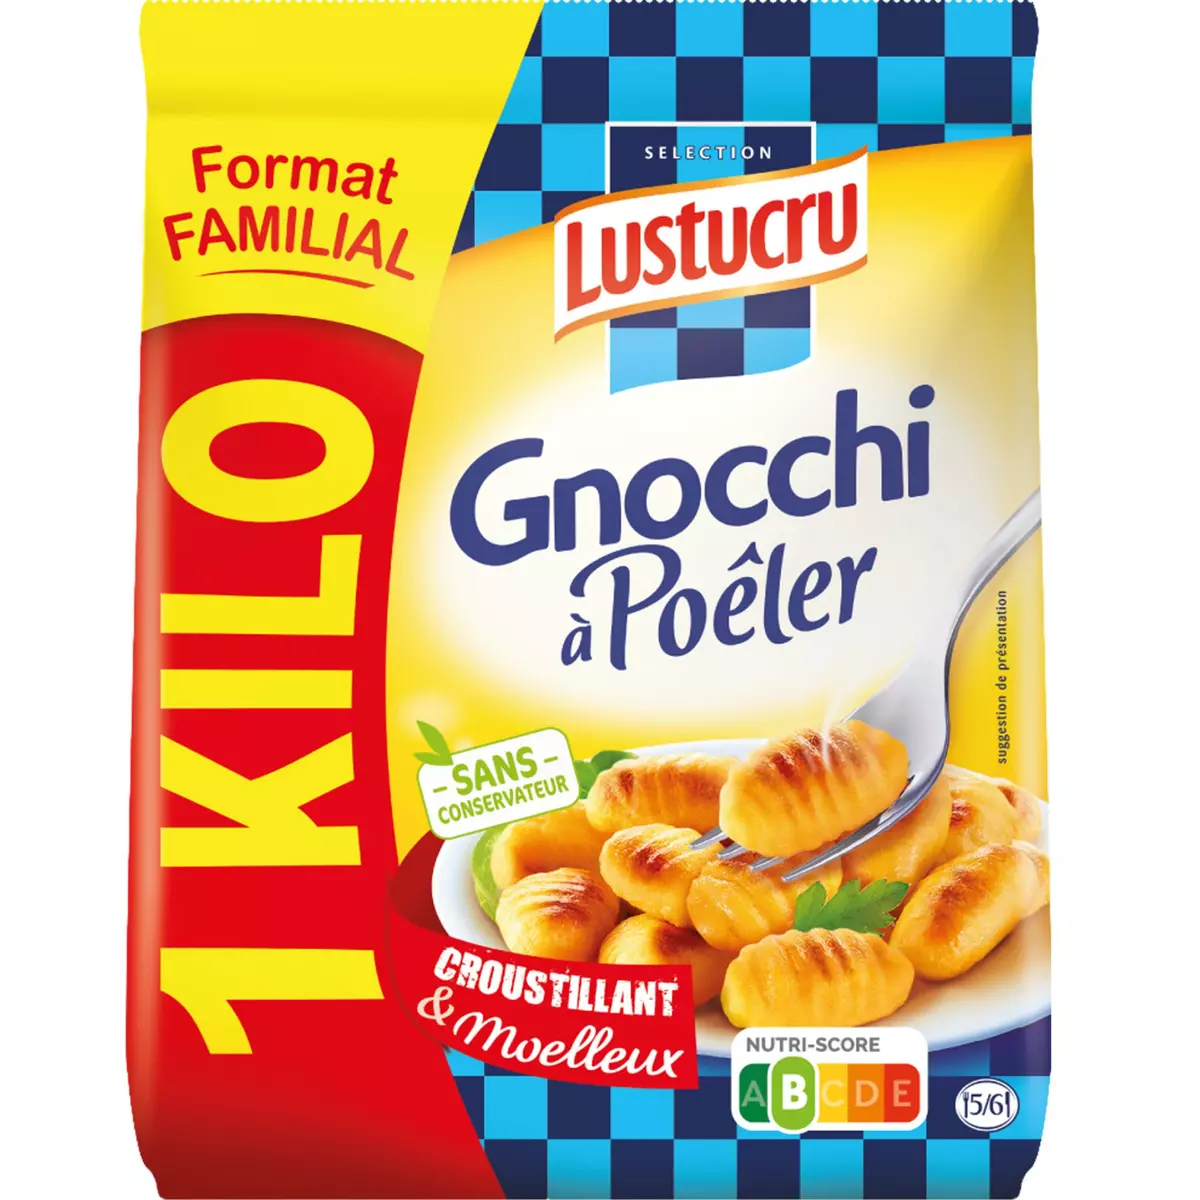 LUSTUCRU Gnocchi à poêler nature format familial 6 portions 1kg